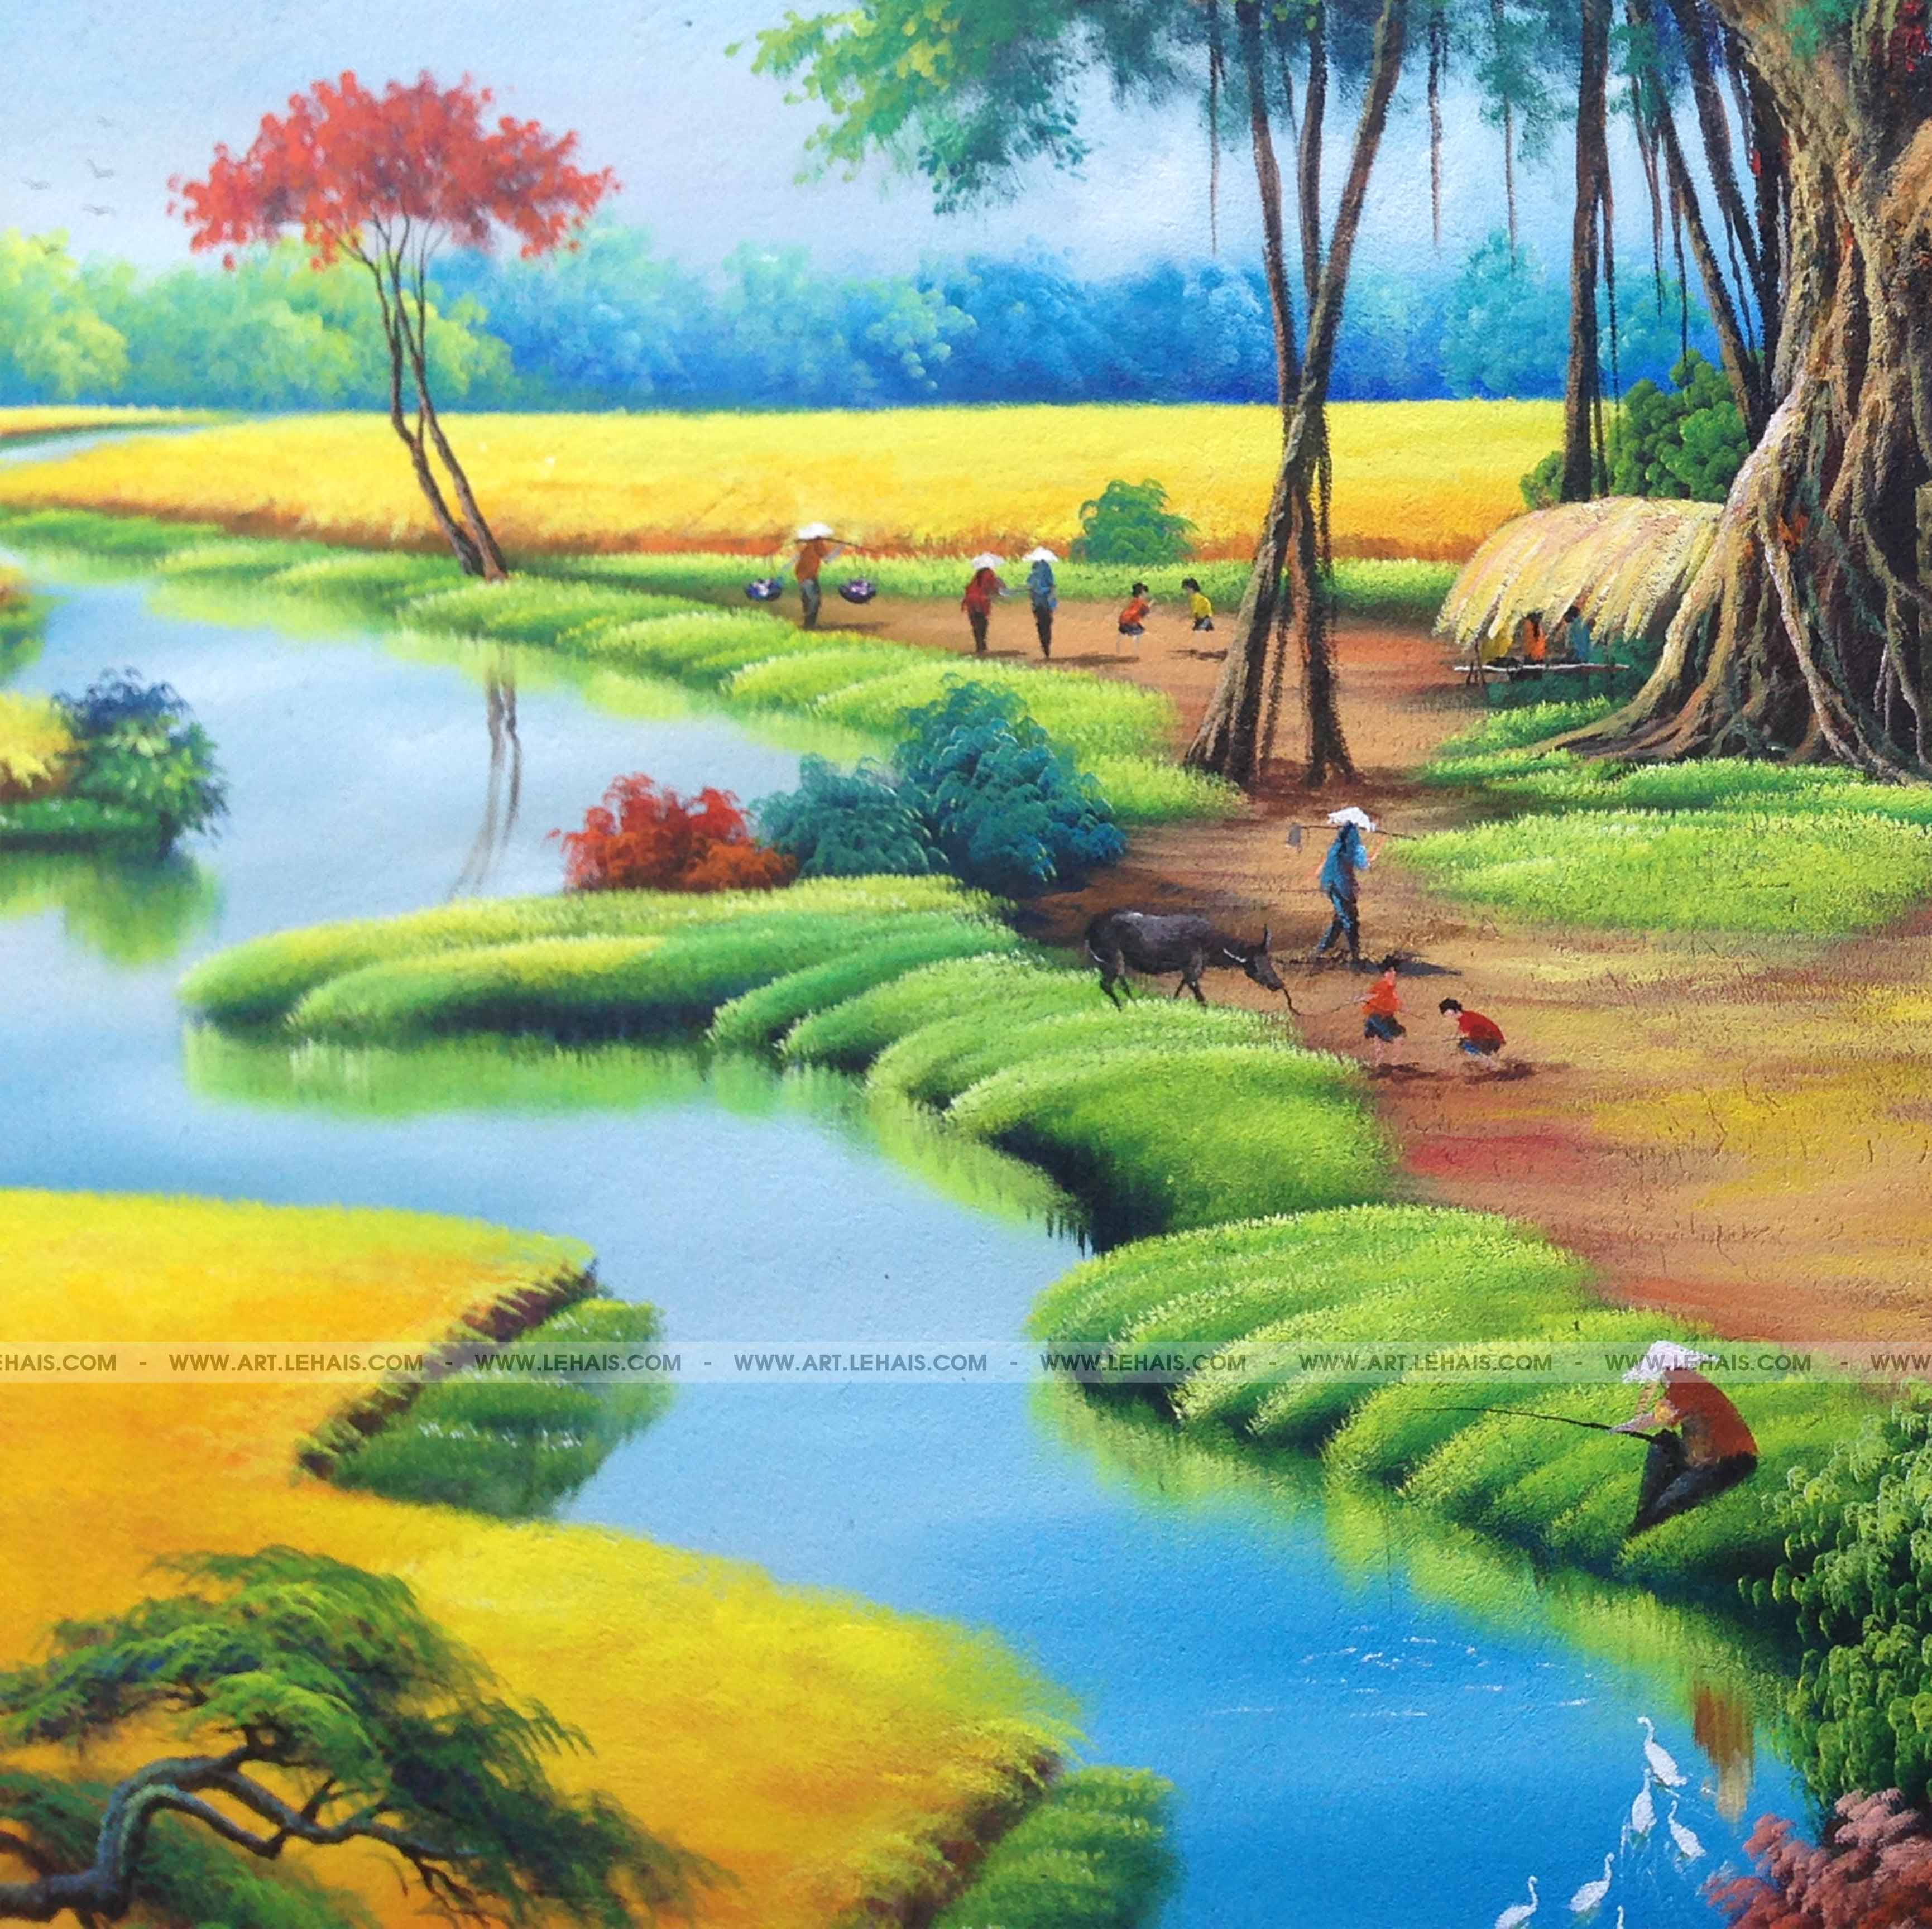 Vẽ tranh phong cảnh làng quê tại Tề Lỗ, Vĩnh Tường, Vĩnh Phúc - TT117LHAR -  LEHAIS ART - TRANH NGHỆ THUẬT CAO CẤP